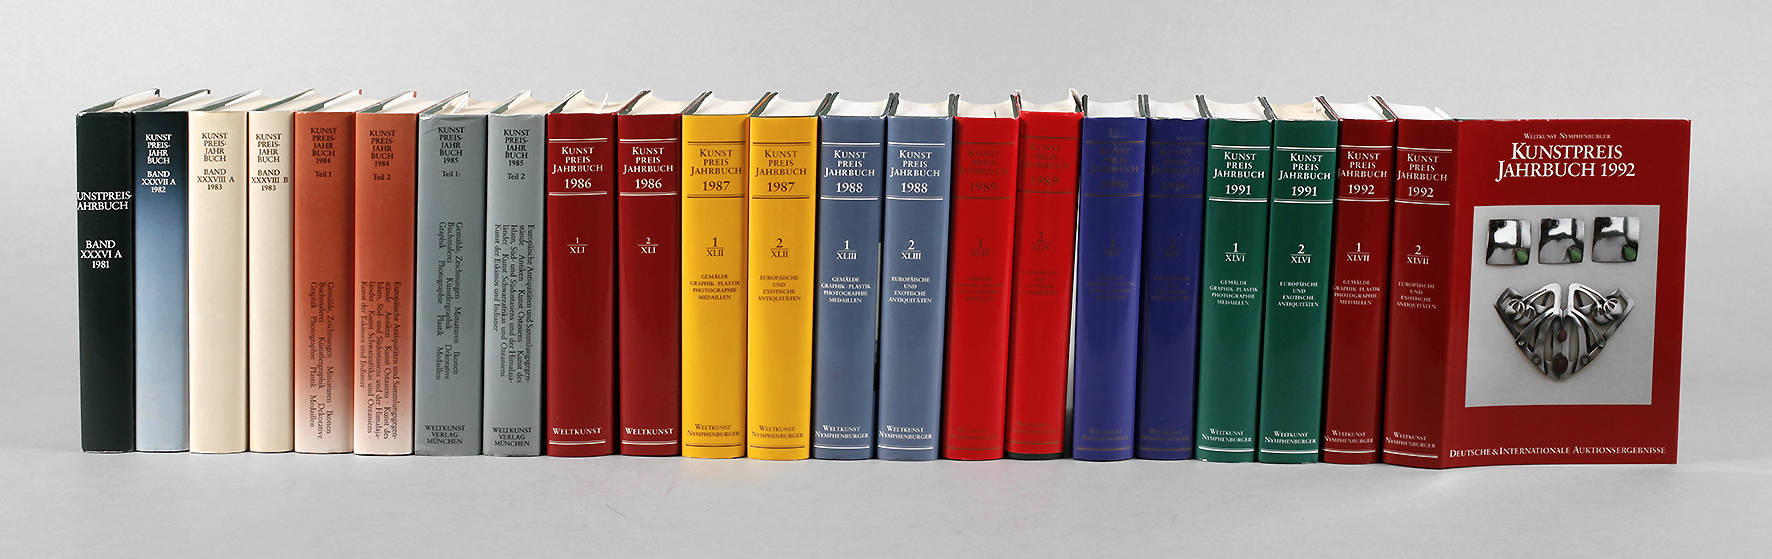 Kunstpreis Jahrbücher 1981 bis 1992